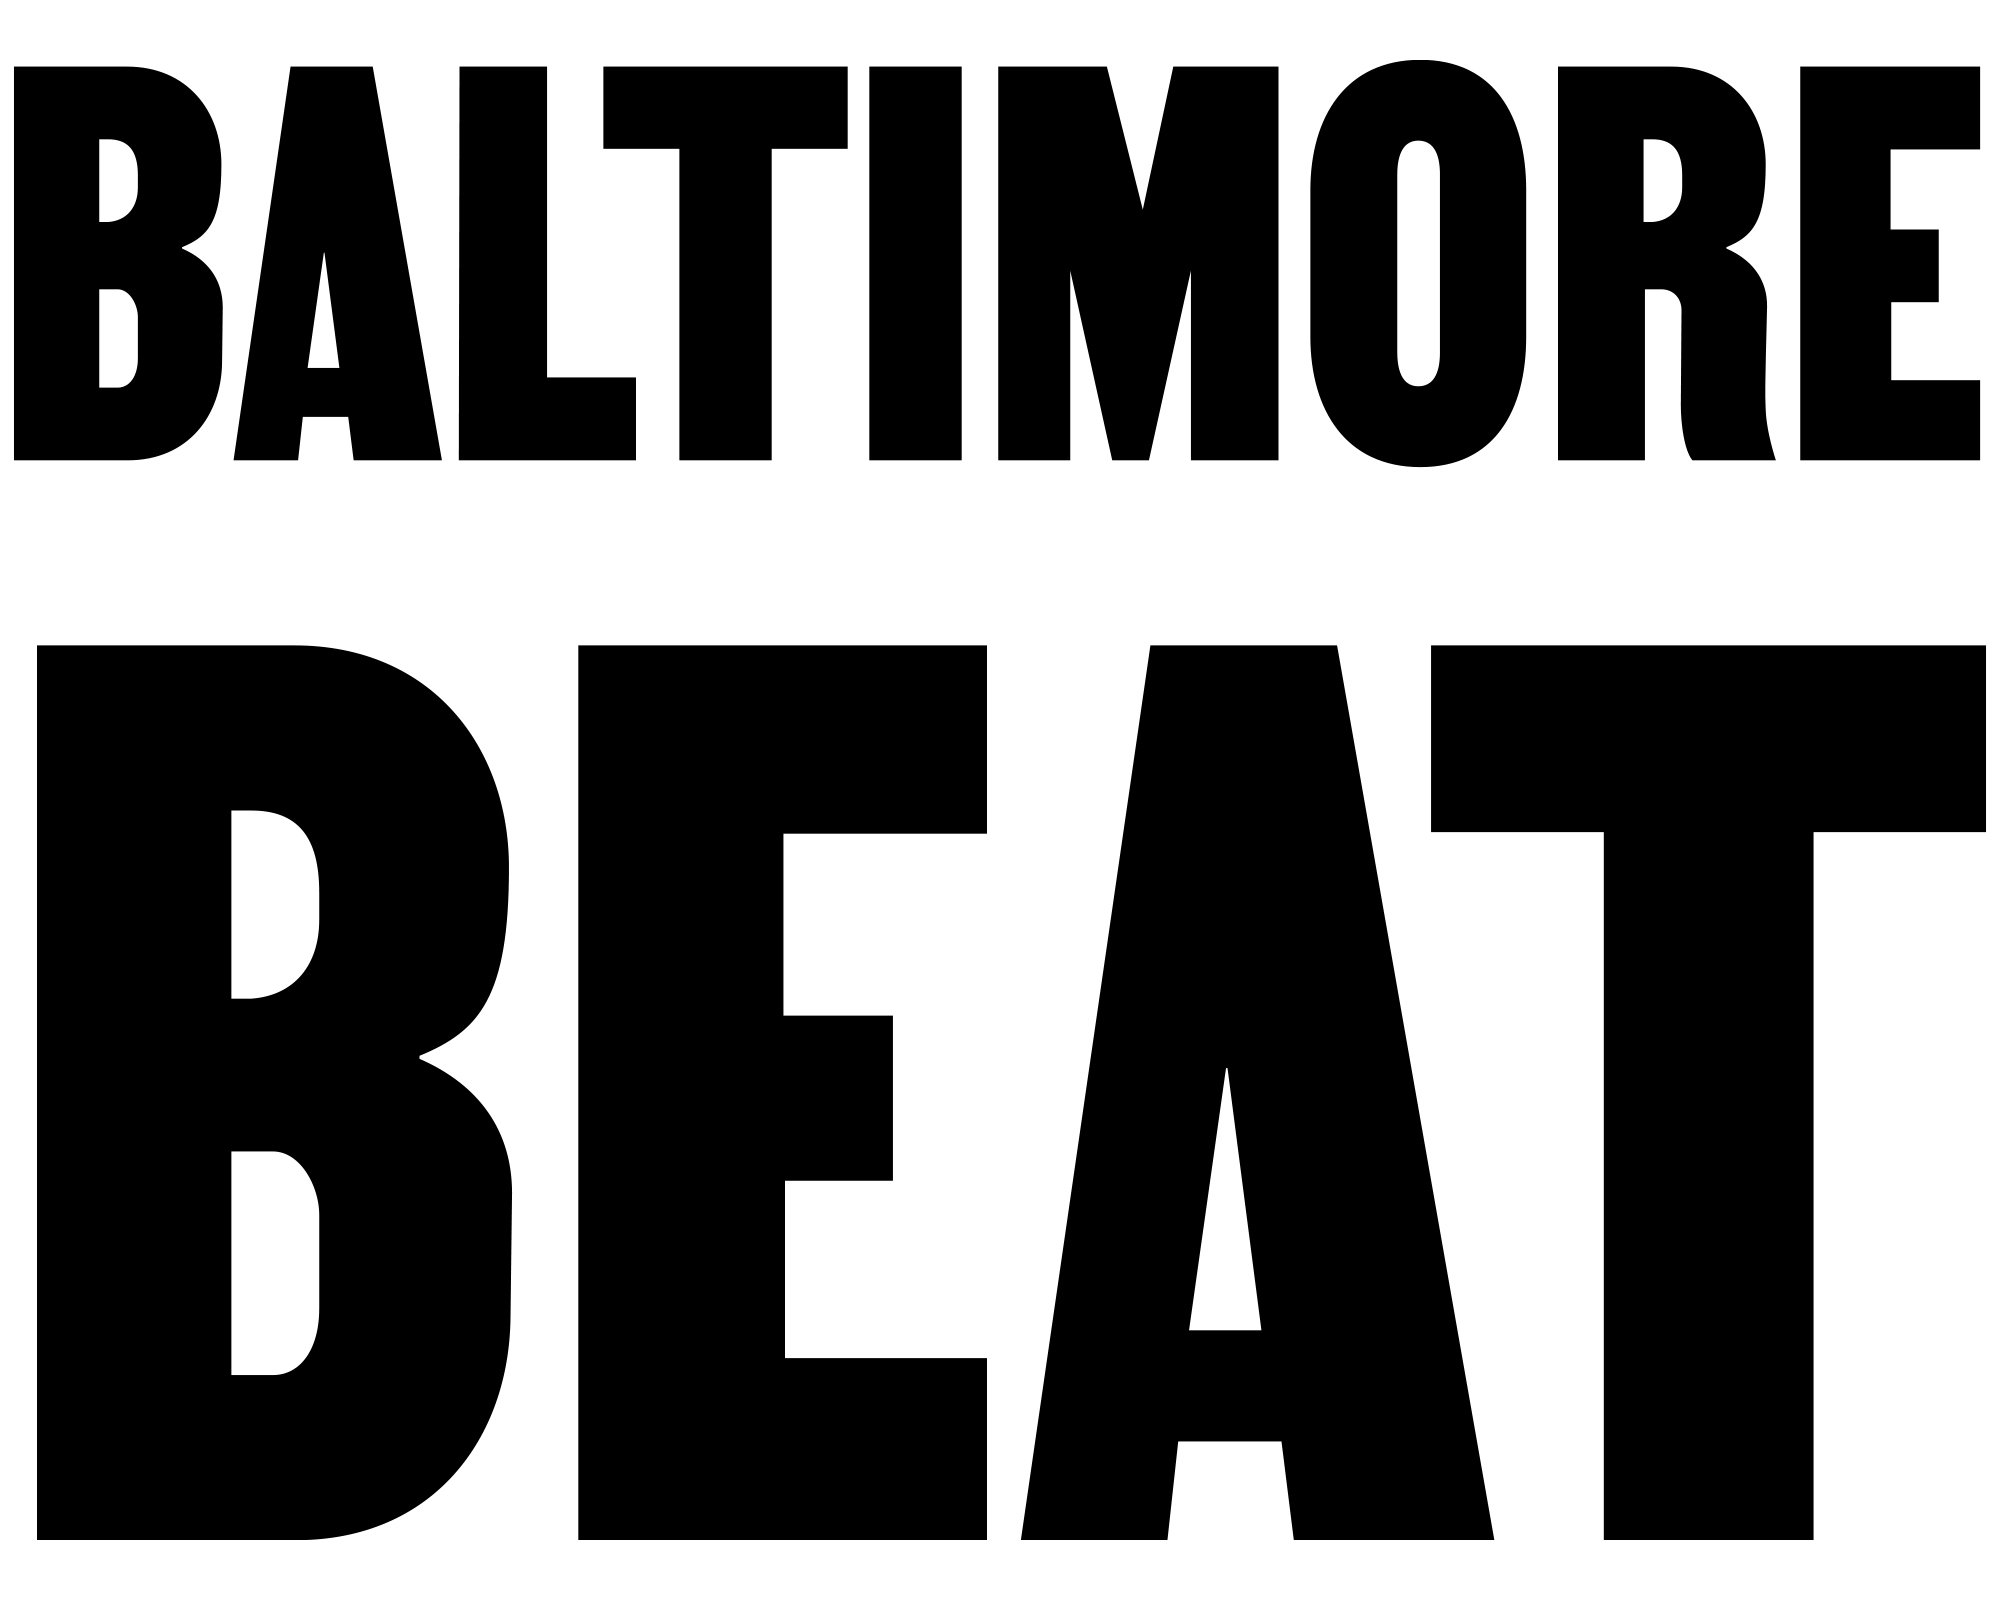 Baltimore Beat